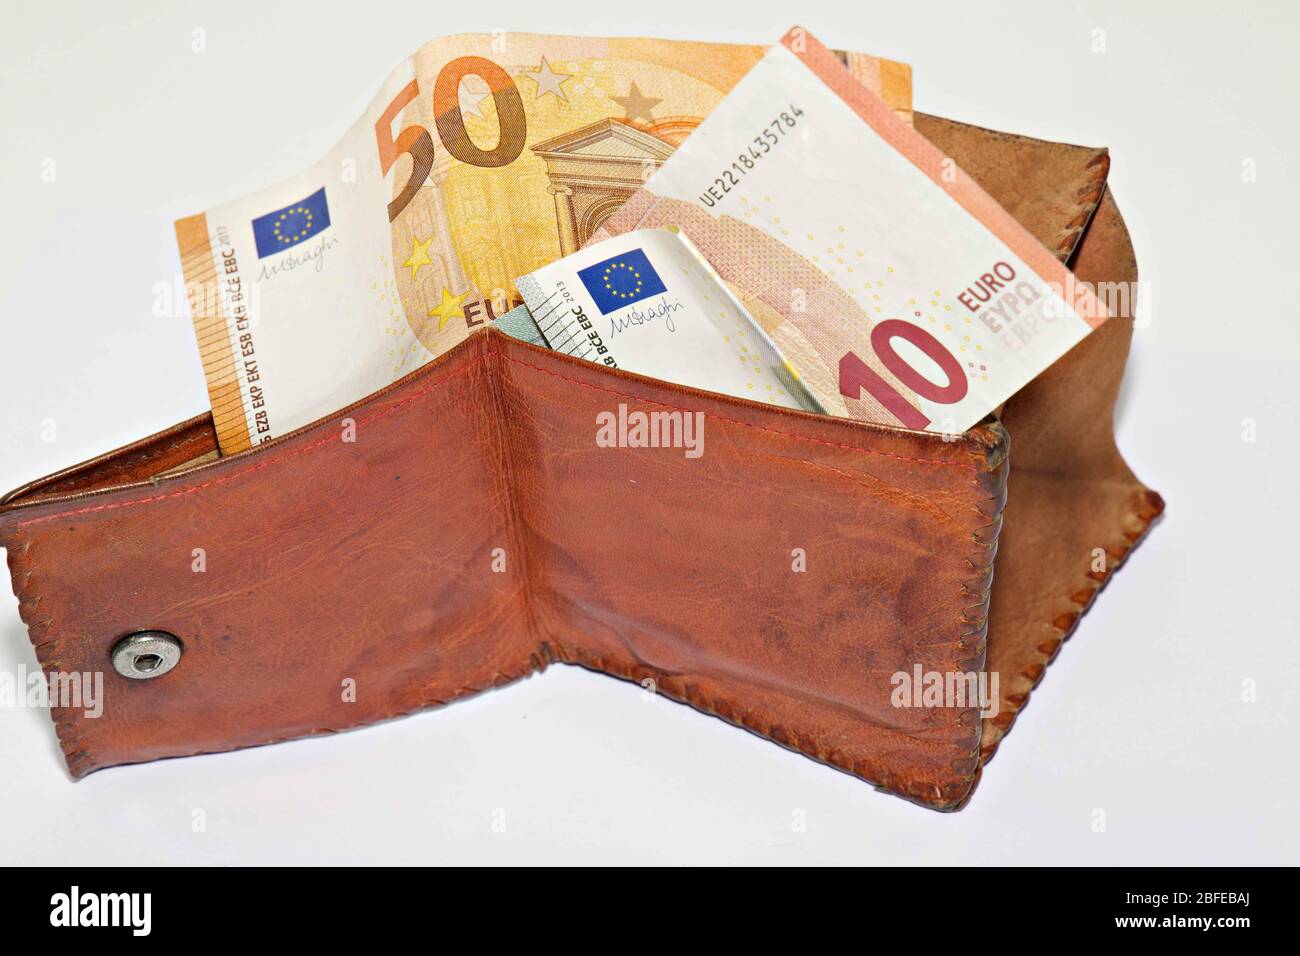 Samstag, 18. April 2020: Lodz Polen. 5 Euro, 10 Euro, 50 Euro, in Brieftasche auf weißem Hintergrund Stockfoto